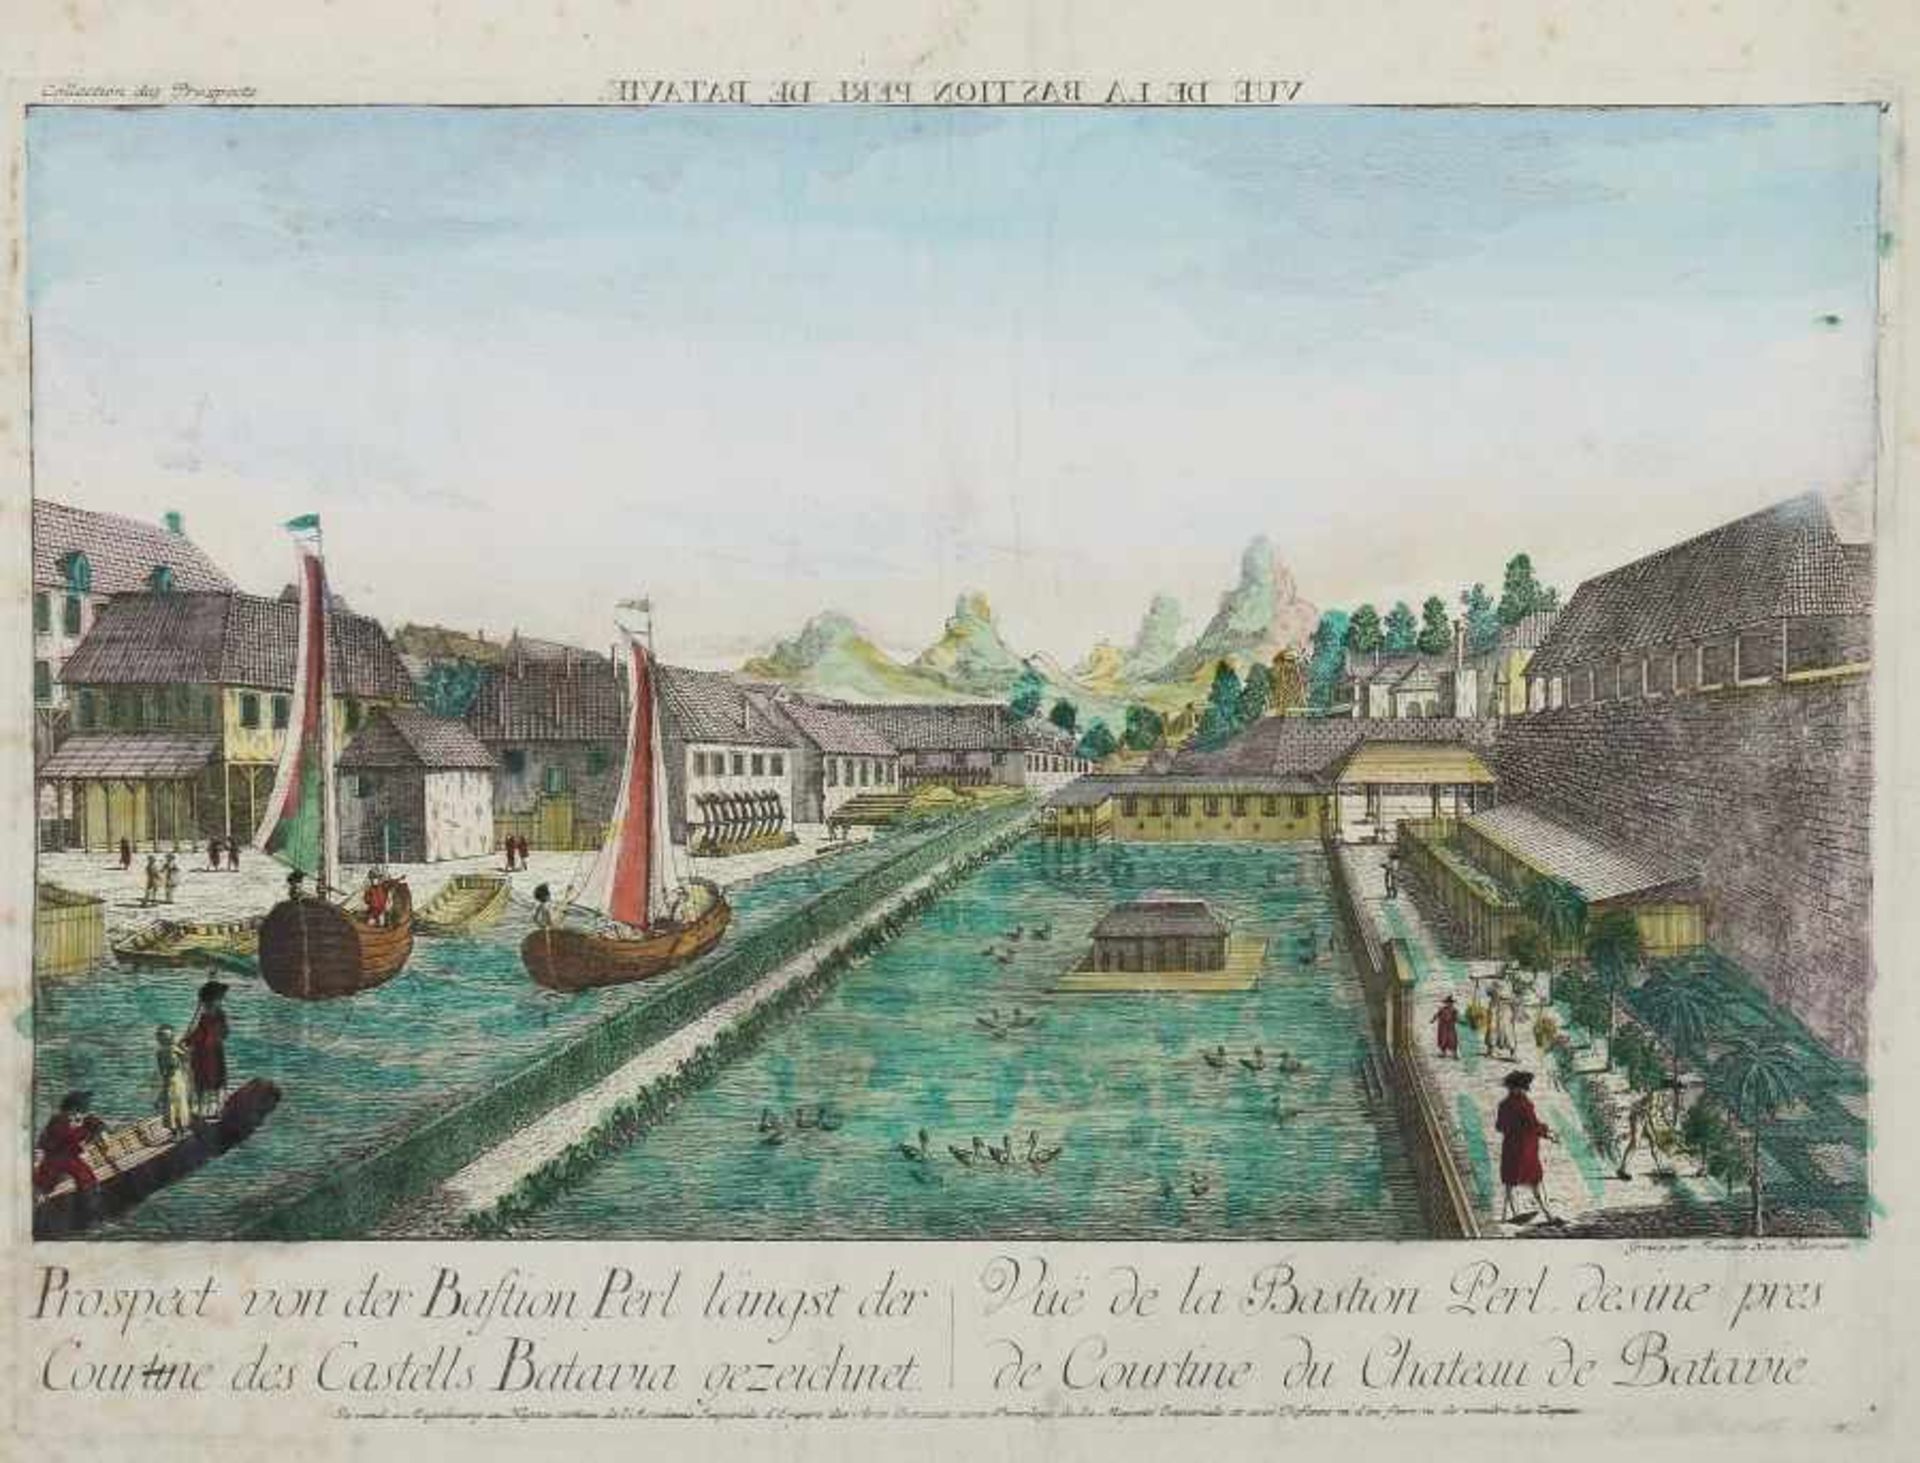 Habermann, Franz Xaver 1721 - 1796. "Prospect von der Bastion Perl längst der Courtine Castells